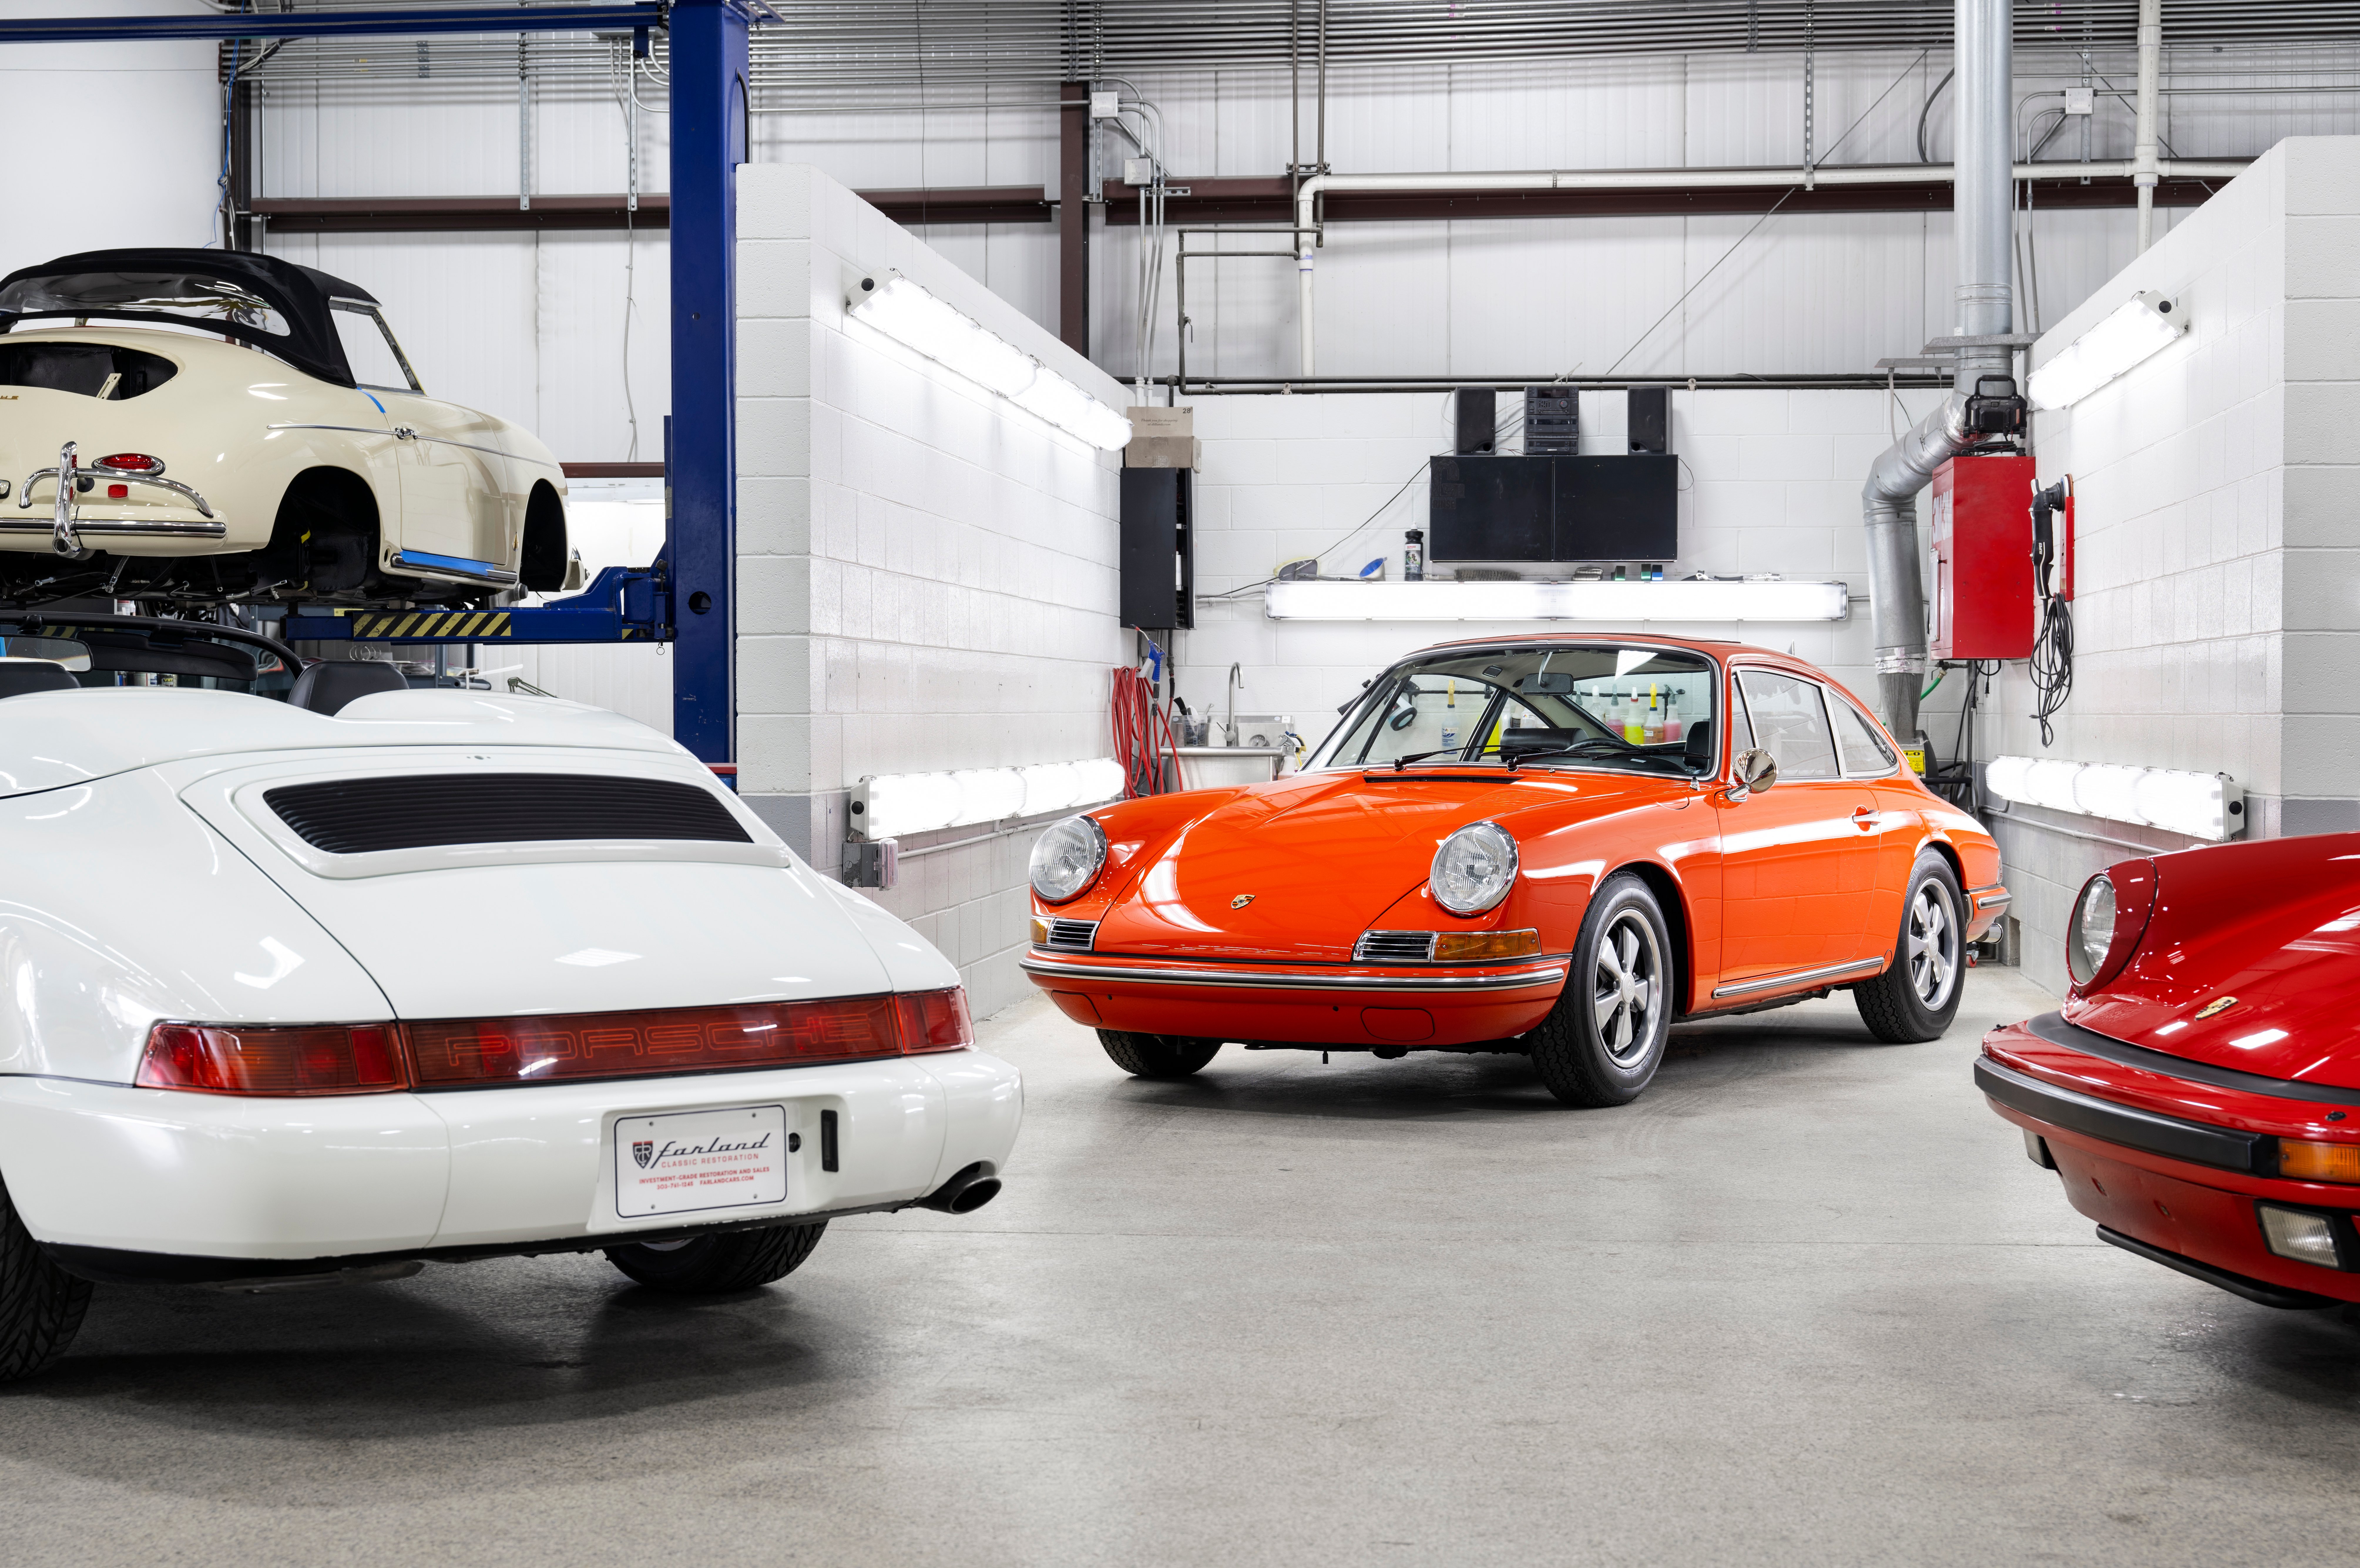 Speedphotos - Farland Classic Restoration - Tangerine Porsche - Speedster